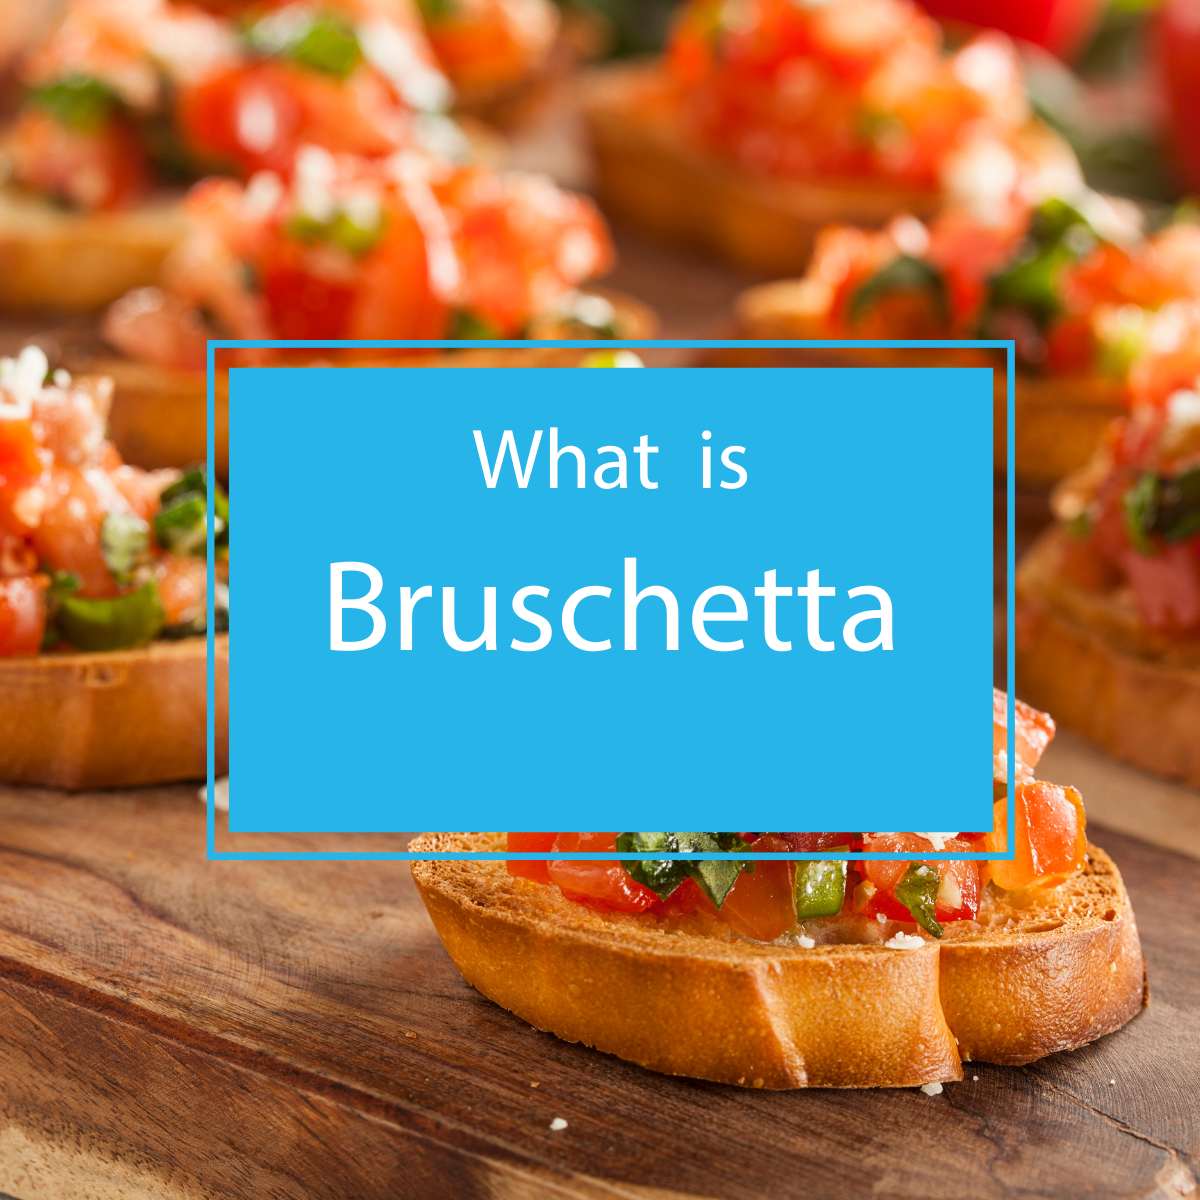 What is bruschetta